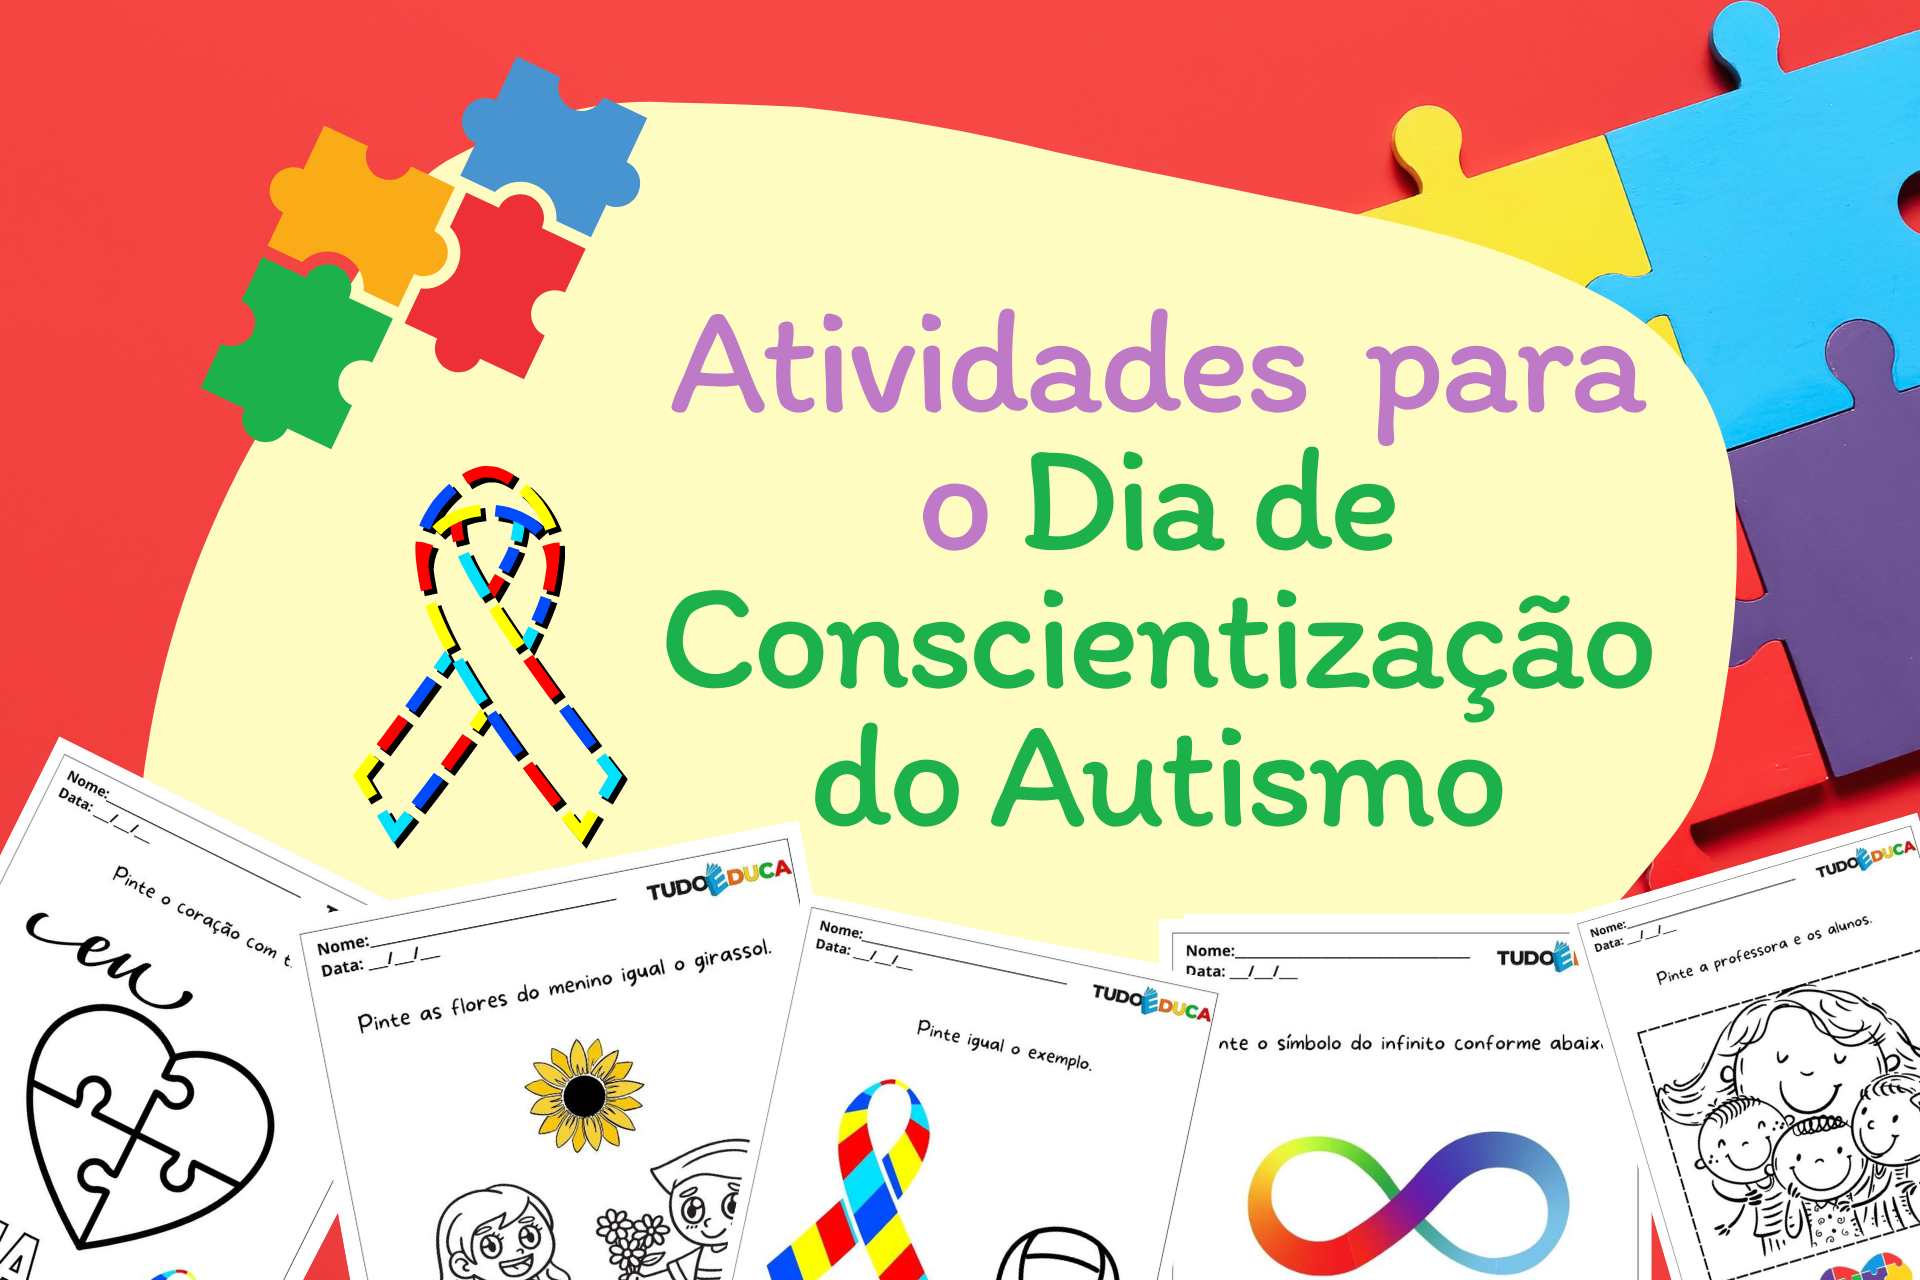 Atividades para o Dia de Conscientização do Autismo